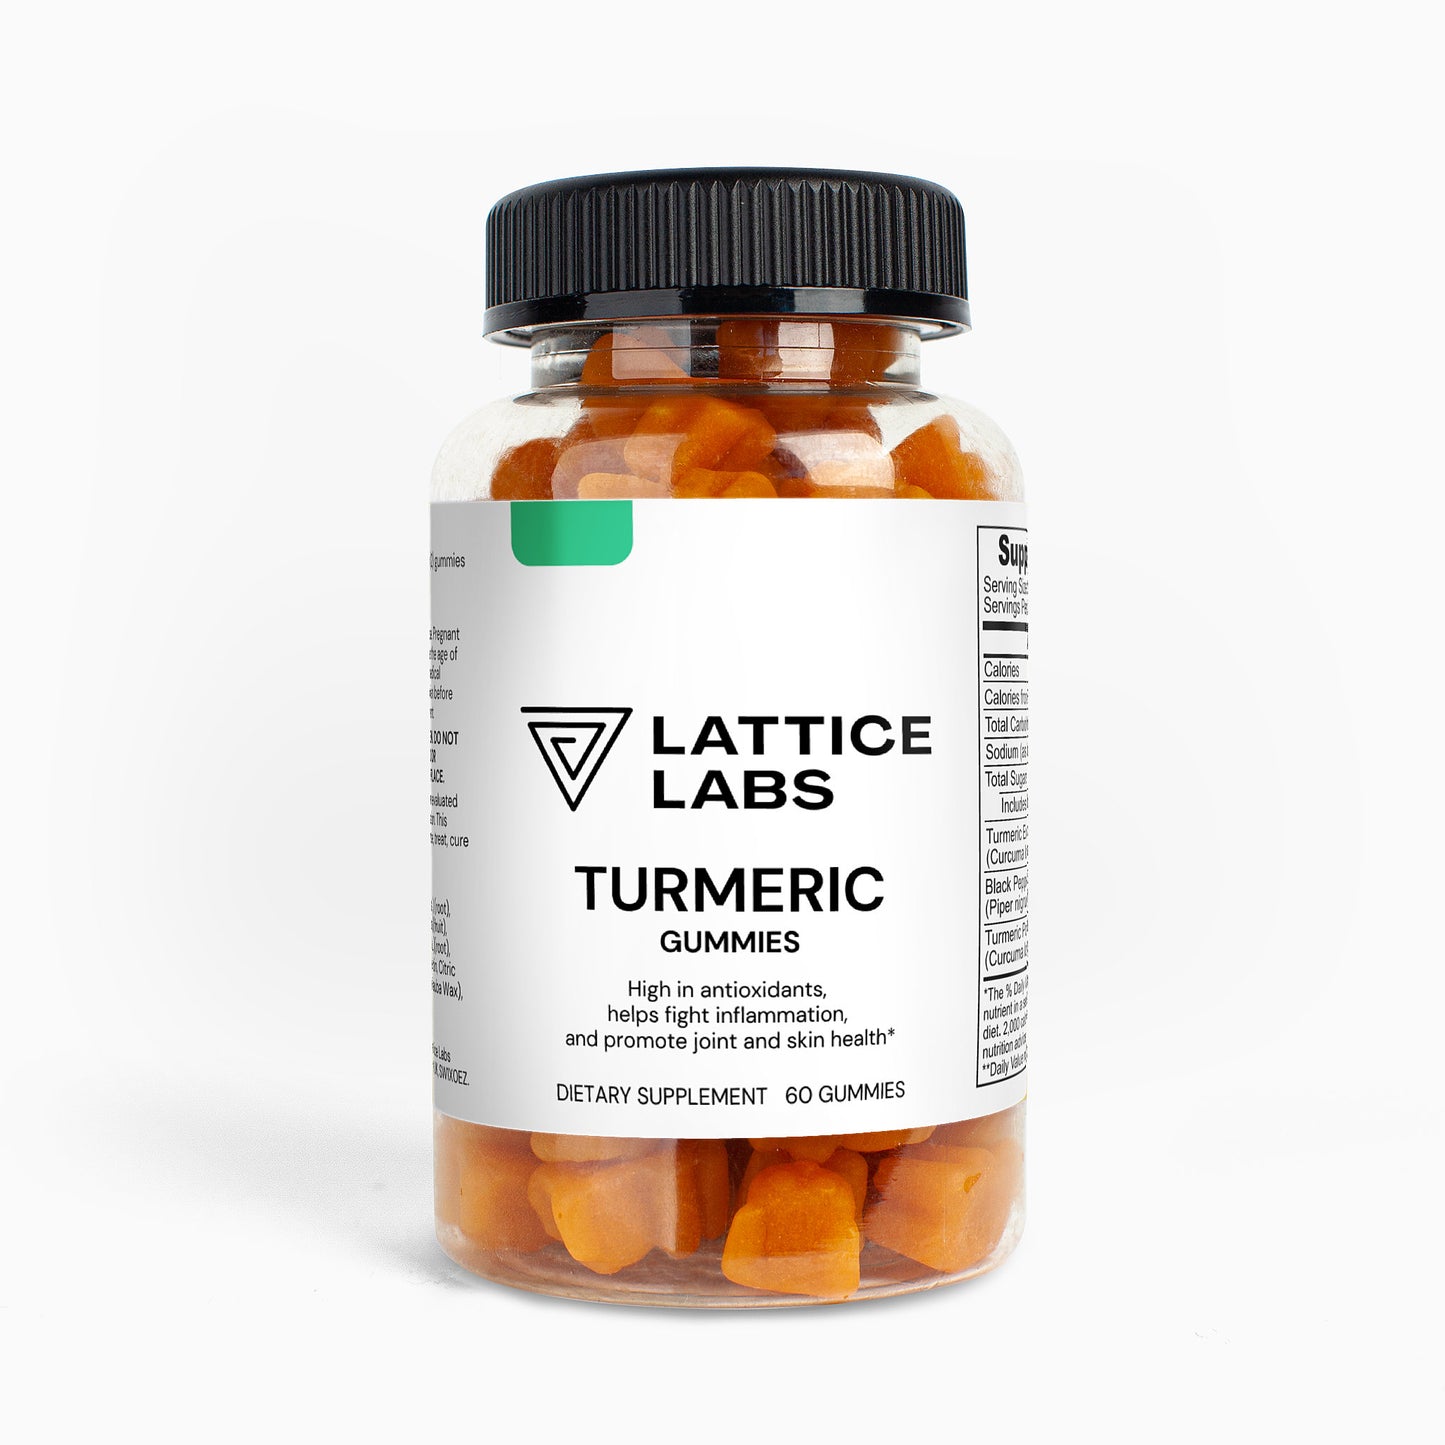 Lattice Labs Turmeric Gummies